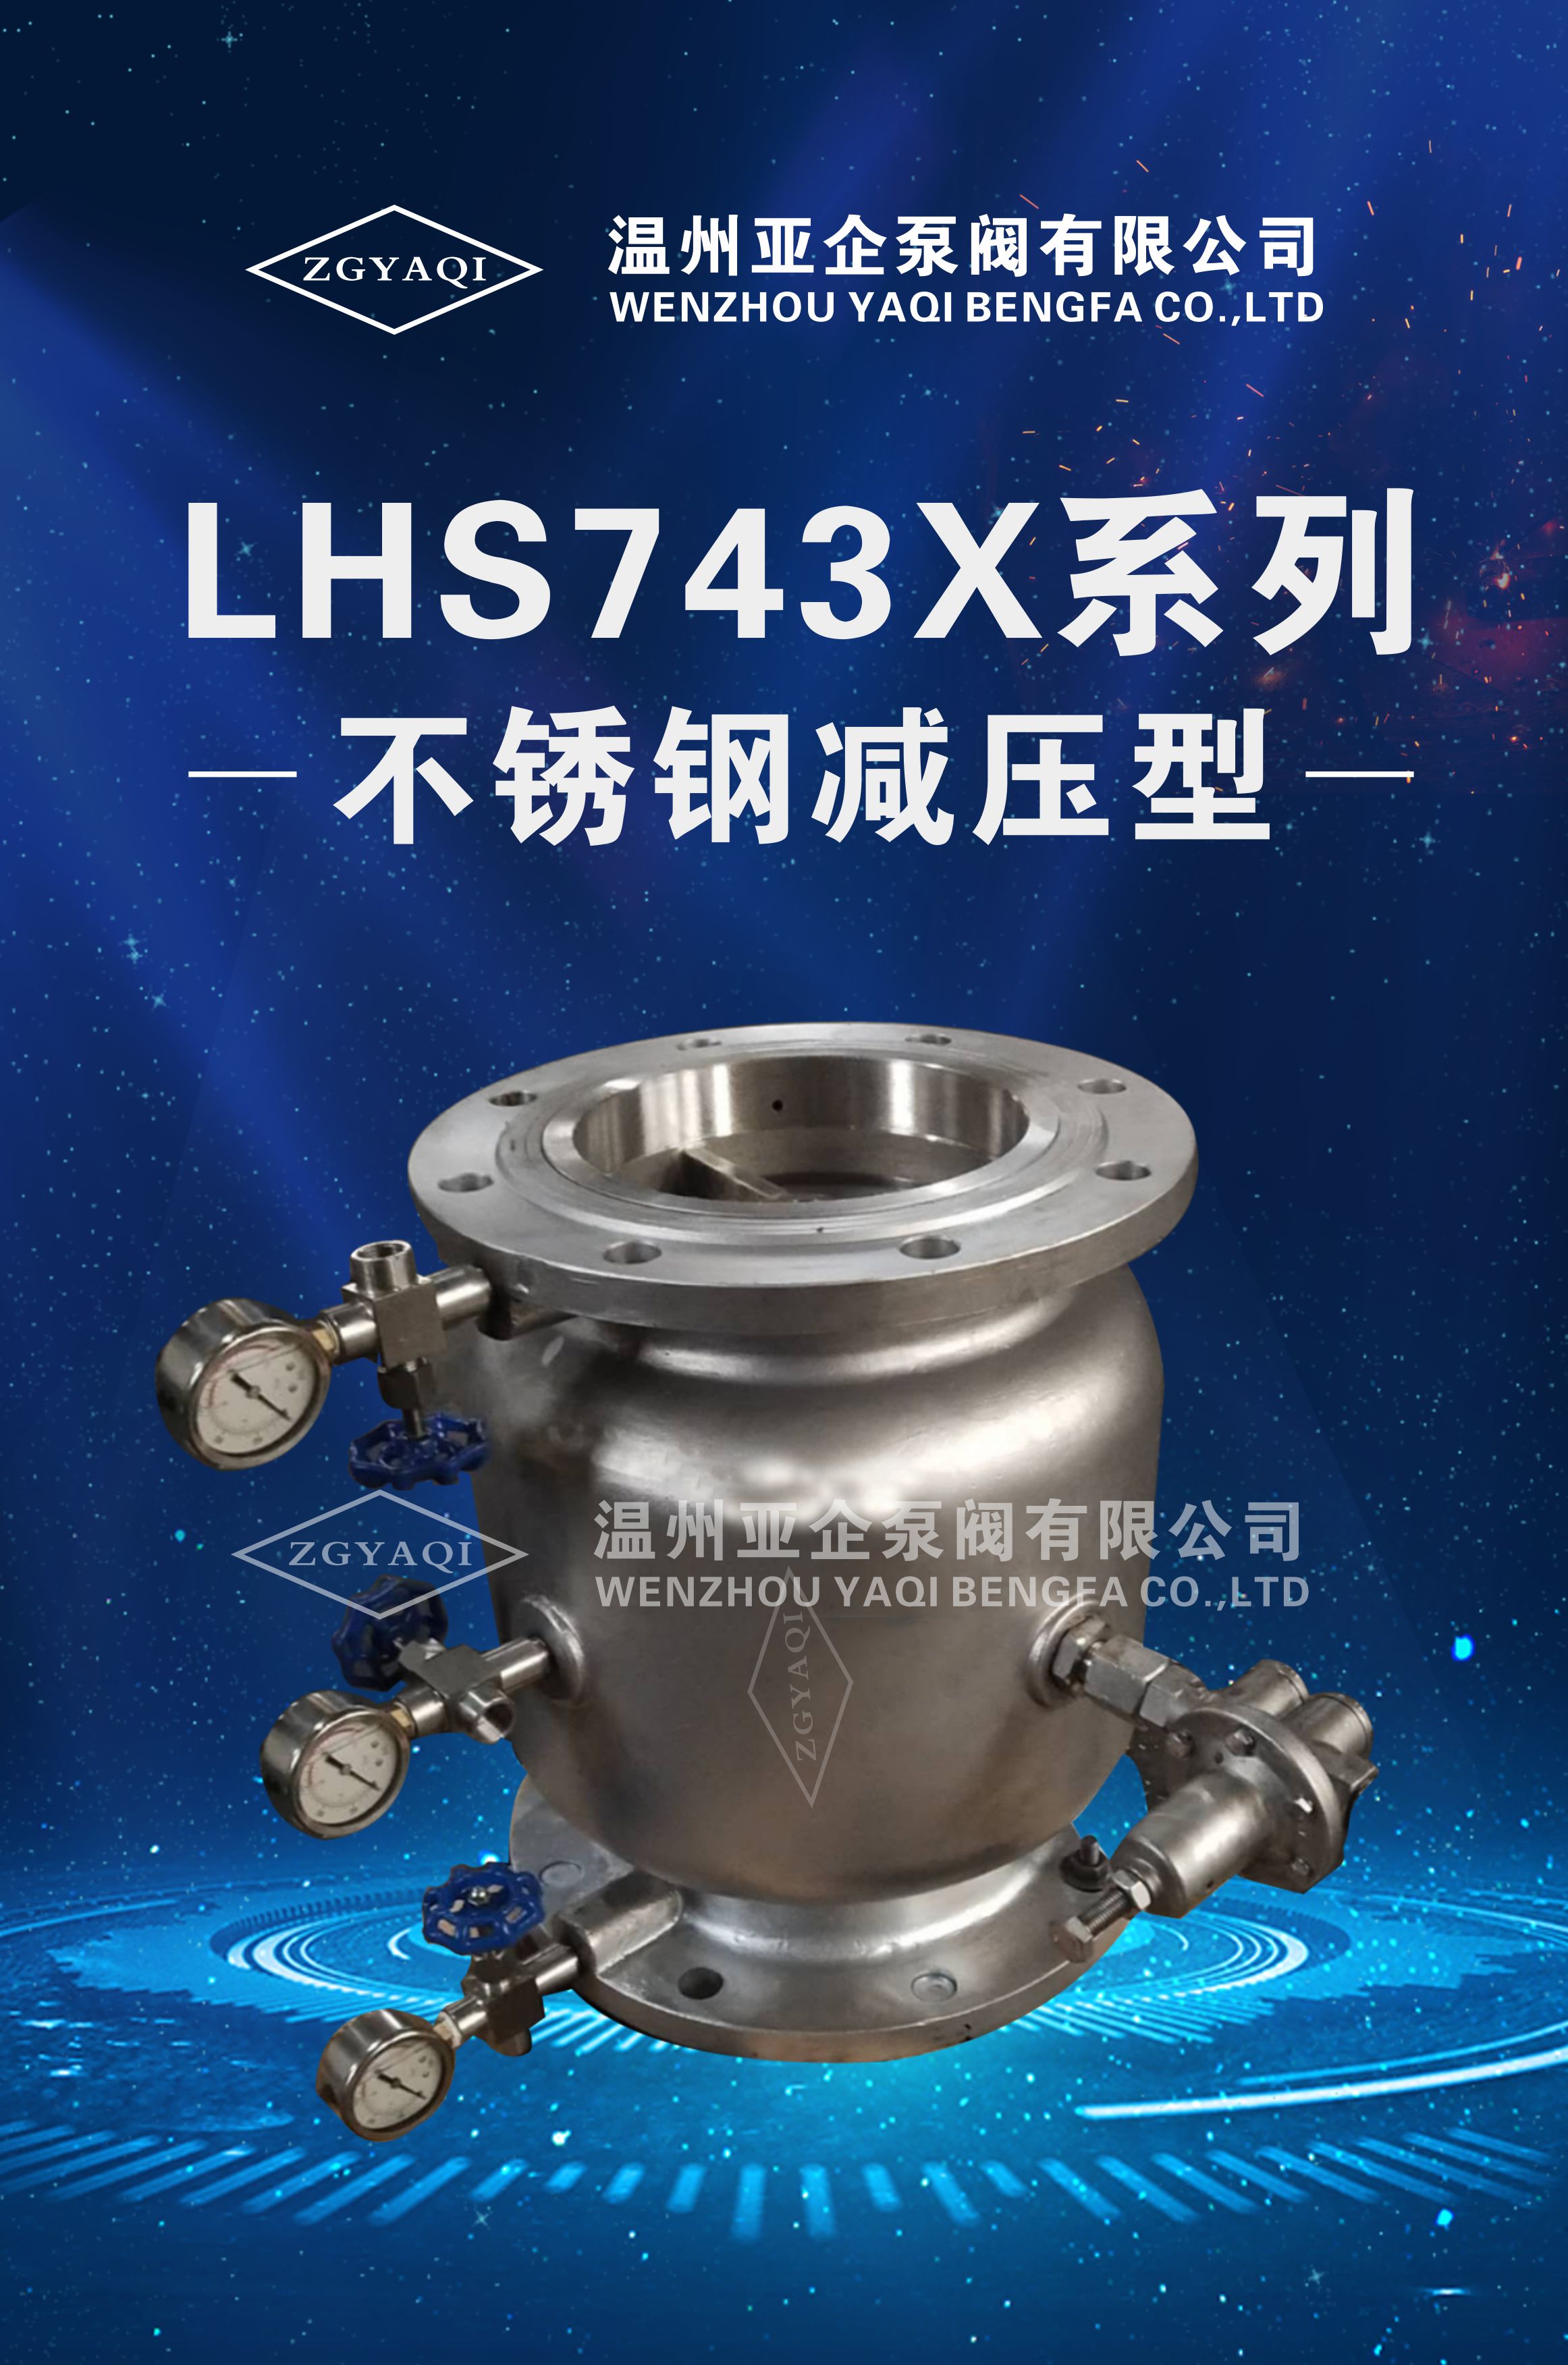 LHS743X系列 不锈钢减压型批发